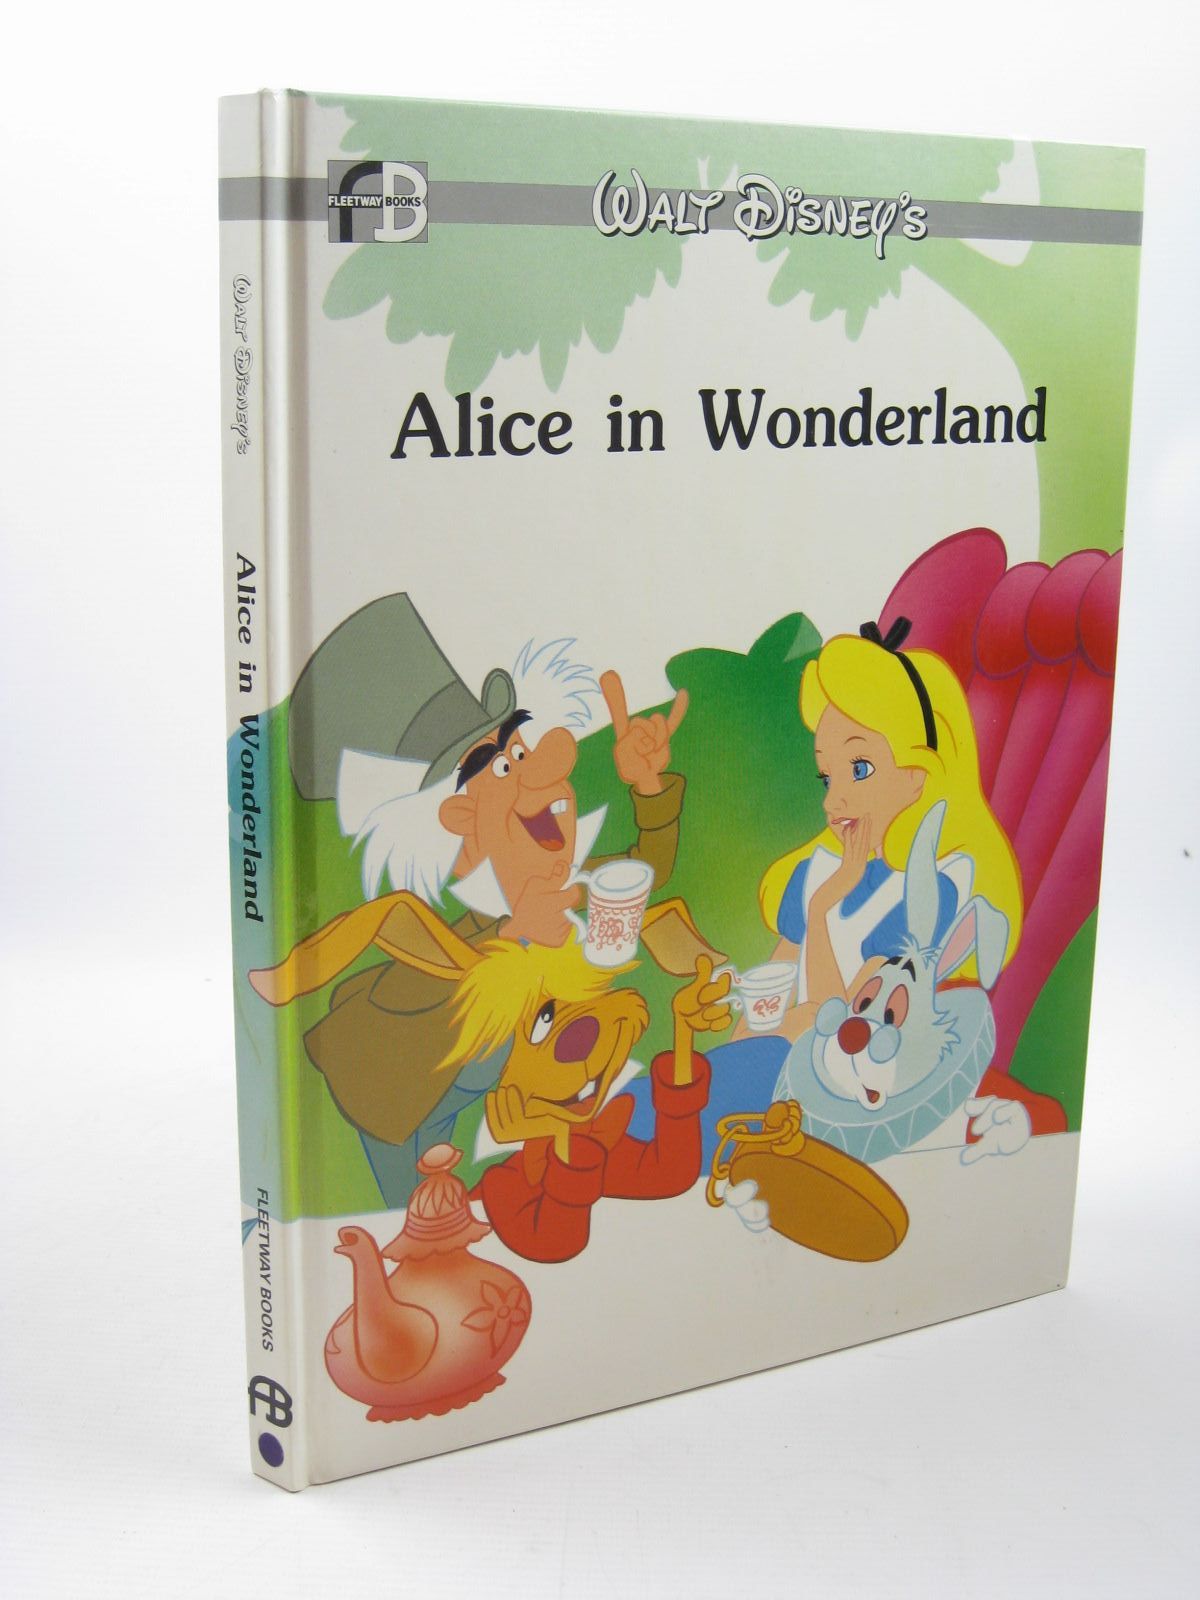 WALT DISNEY'S ALICE IN WONDERLAND written by Carroll, Lewis Disney ...